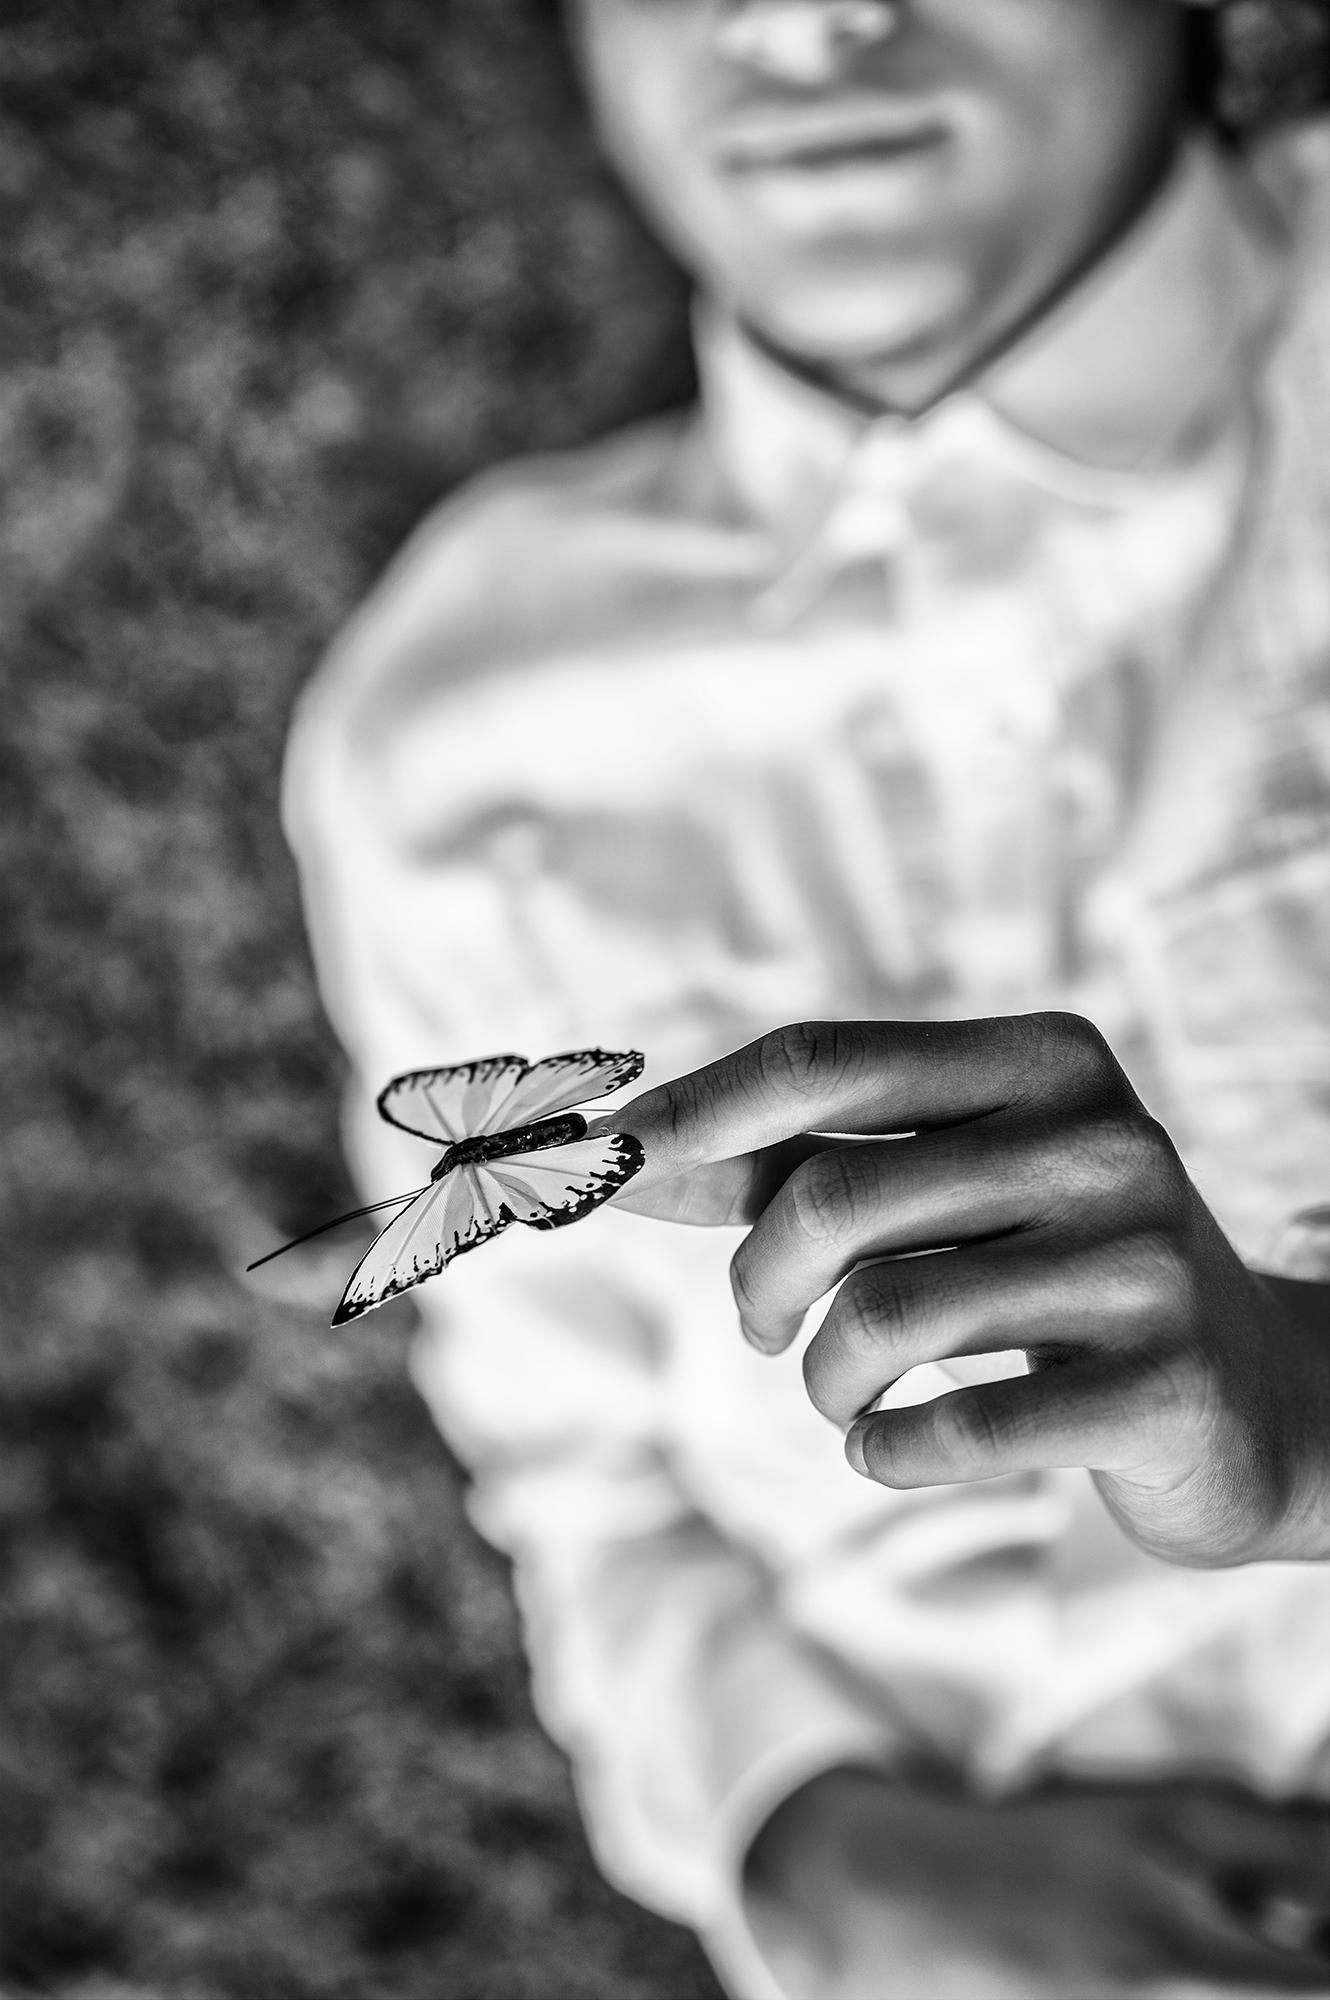 Sarah Hadley Black and White Photograph – Der Junge und der Schmetterling